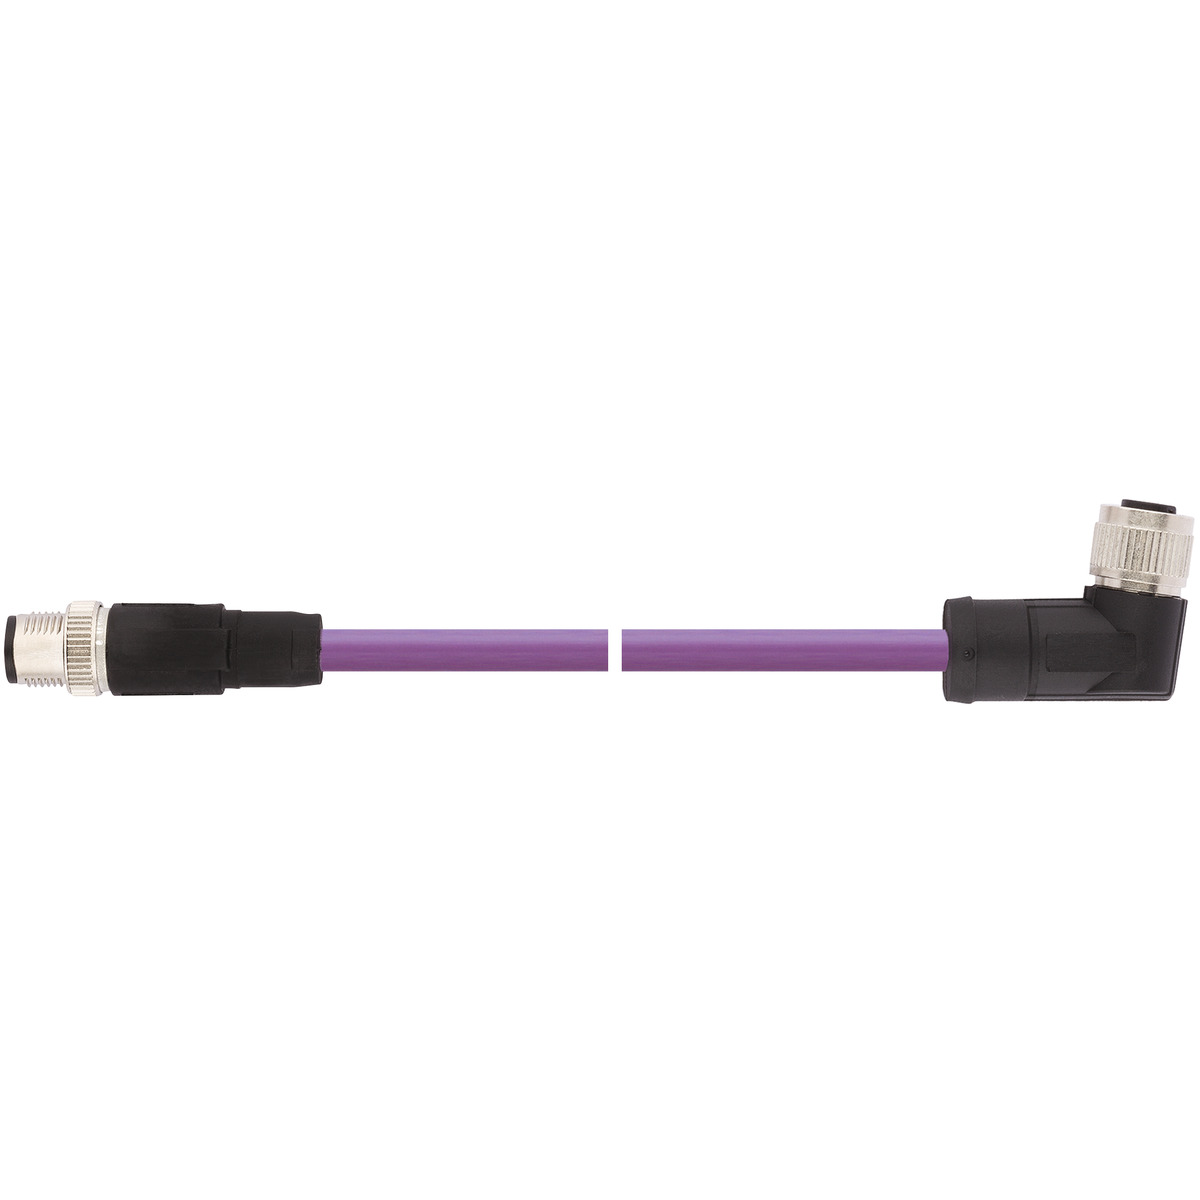 UNITRONIC® BUS CAN M12 pre-assembled bus cable